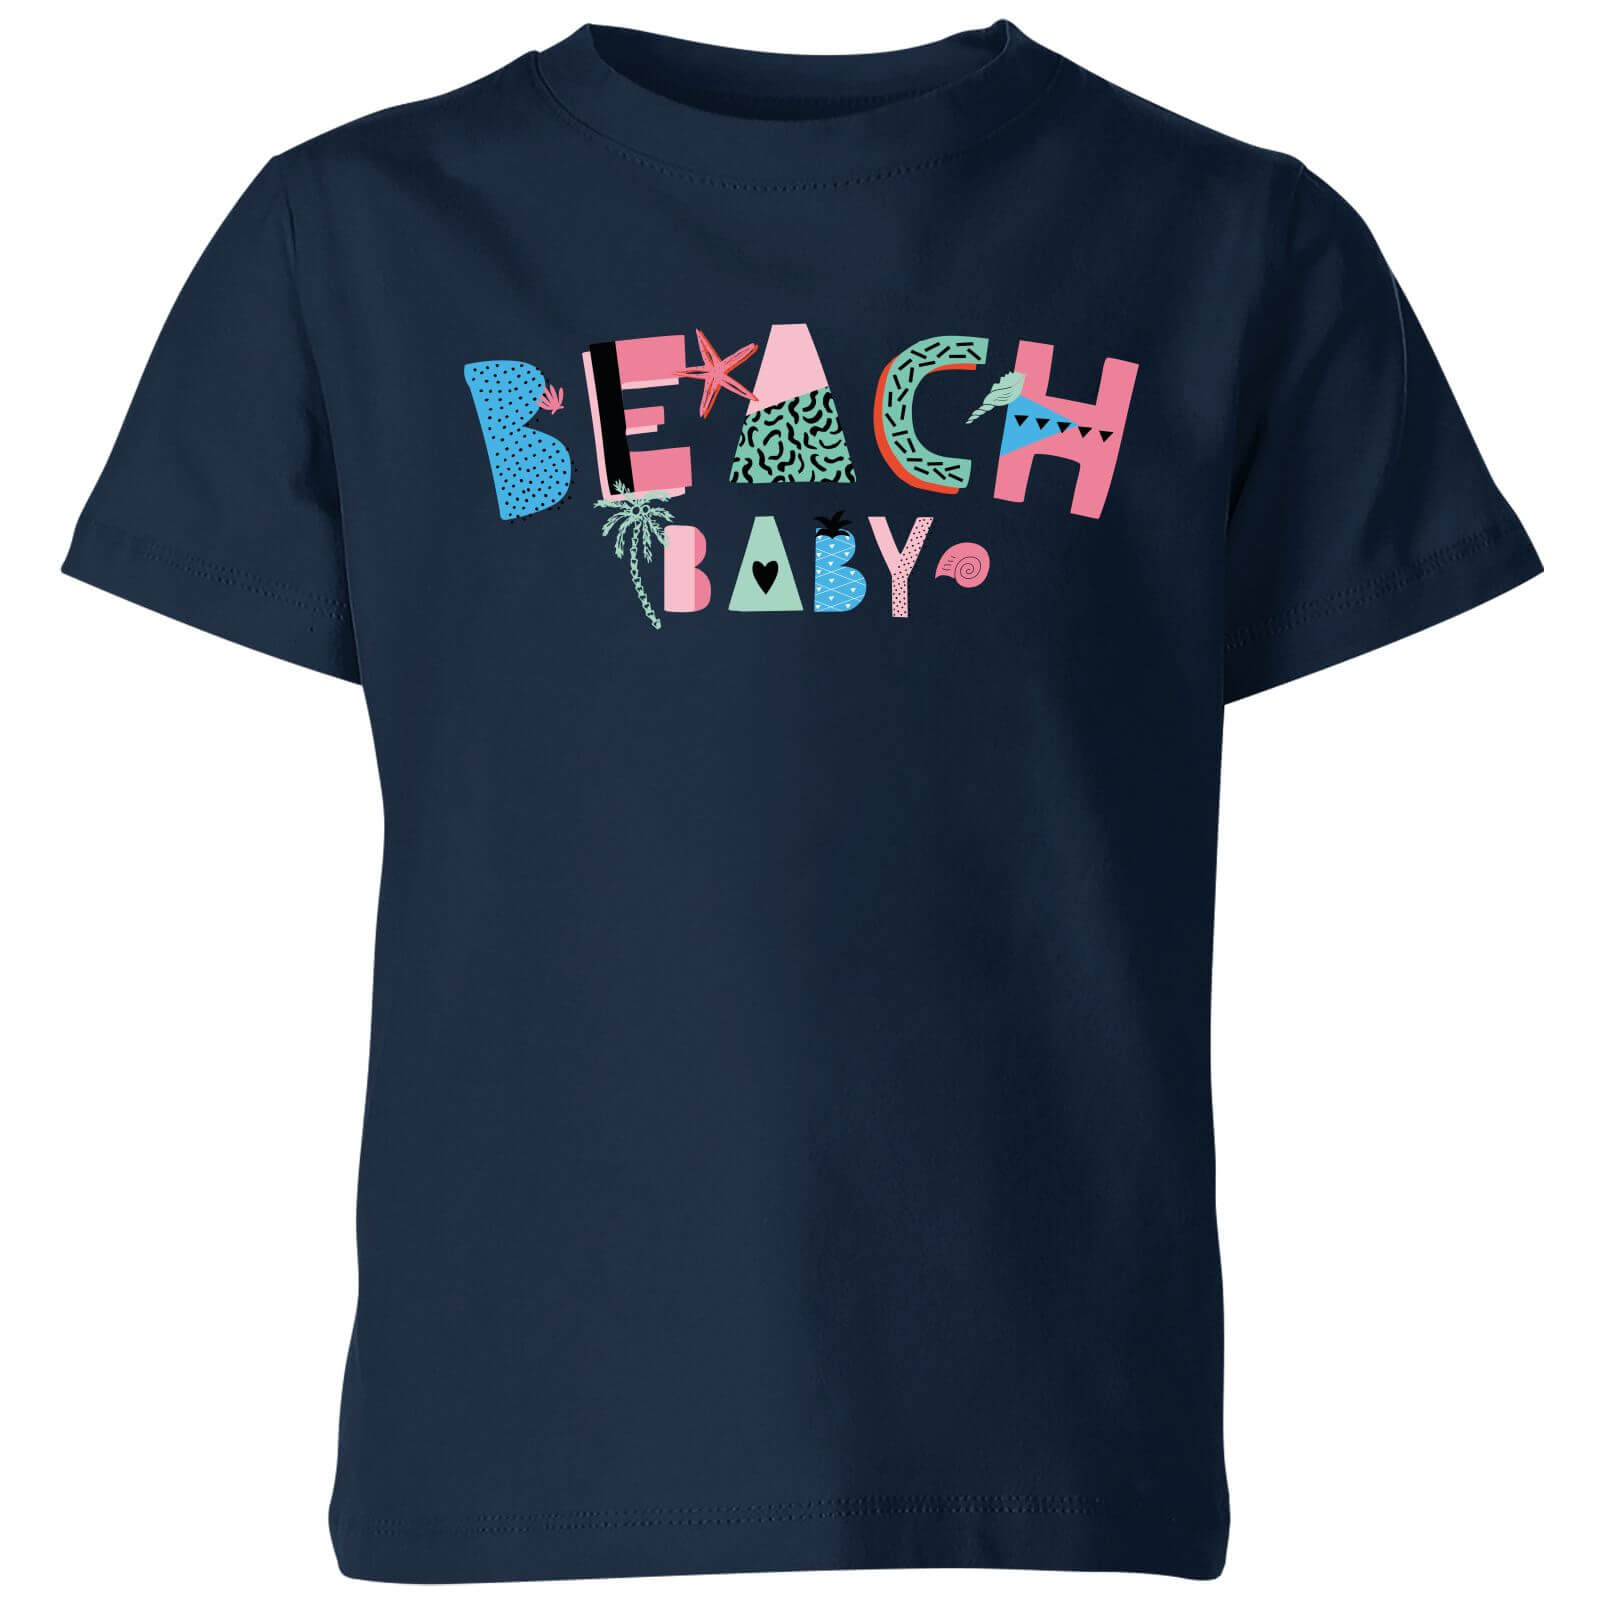 My Little Rascal Beach Baby Kids' T-Shirt - Navy - 3-4 Years - Navy